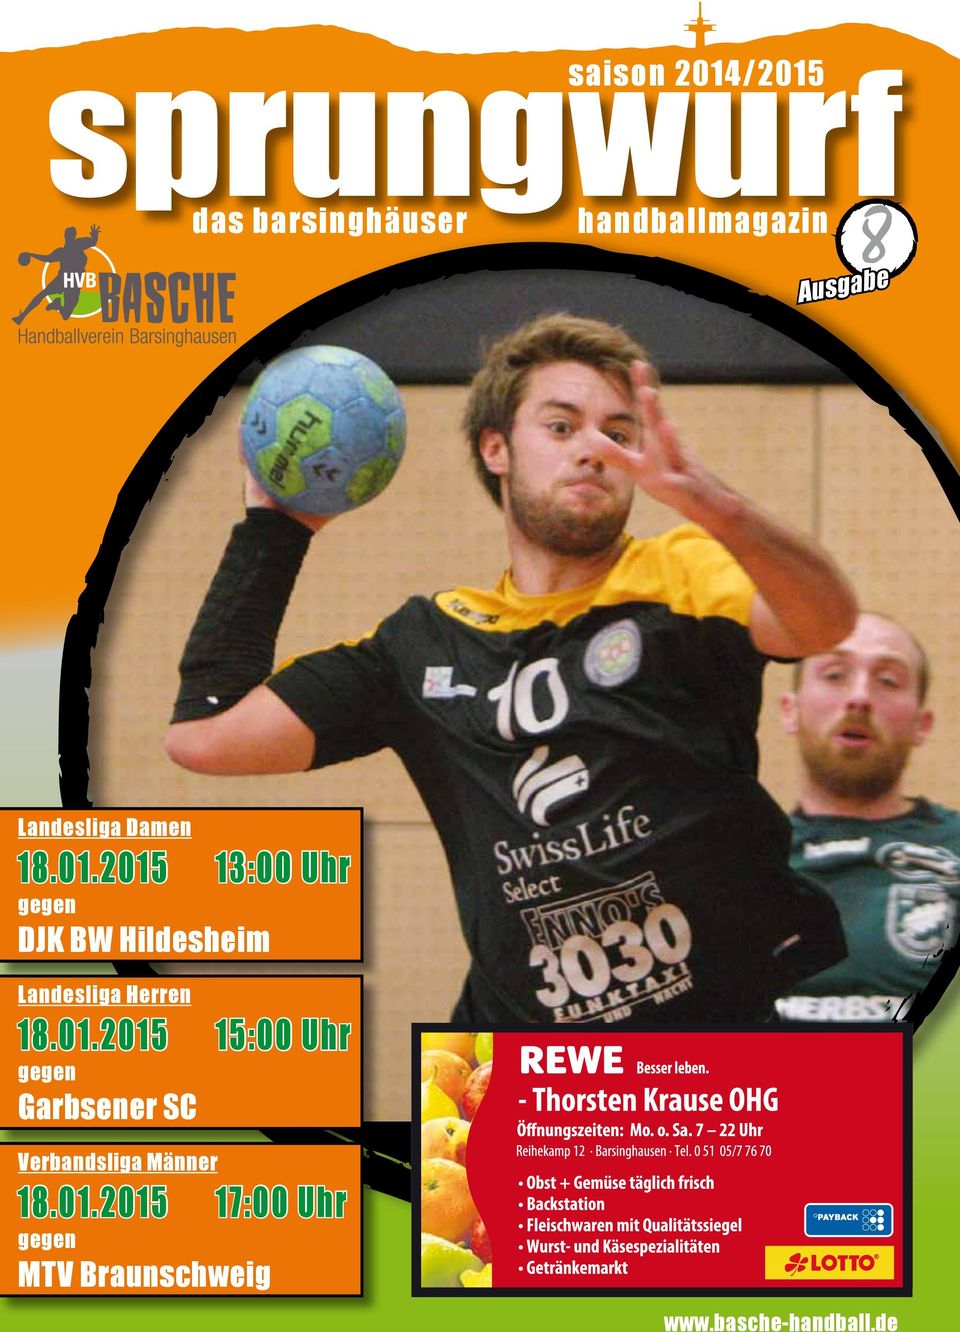 2015 13:00 Uhr gegen DJK BW Hildesheim Landesliga Herren 18.01.2015 15:00 Uhr gegen Garbsener SC Verbandsliga Männer 18.